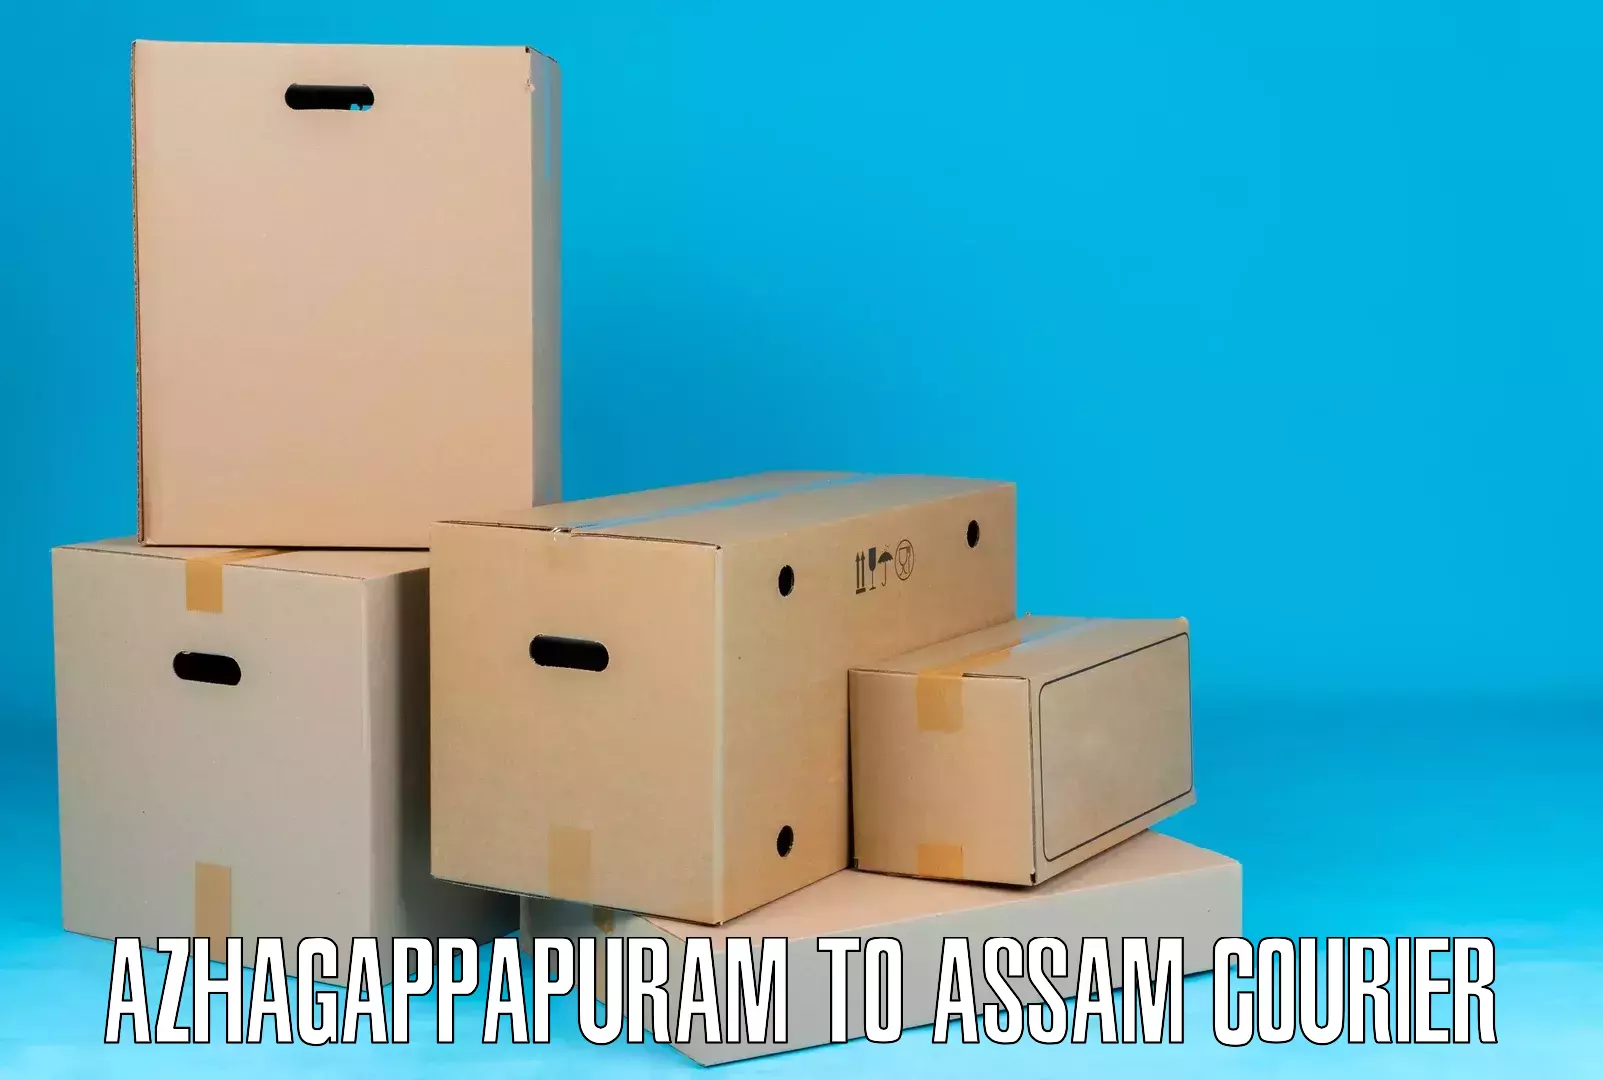 Full-service courier options Azhagappapuram to Titabor